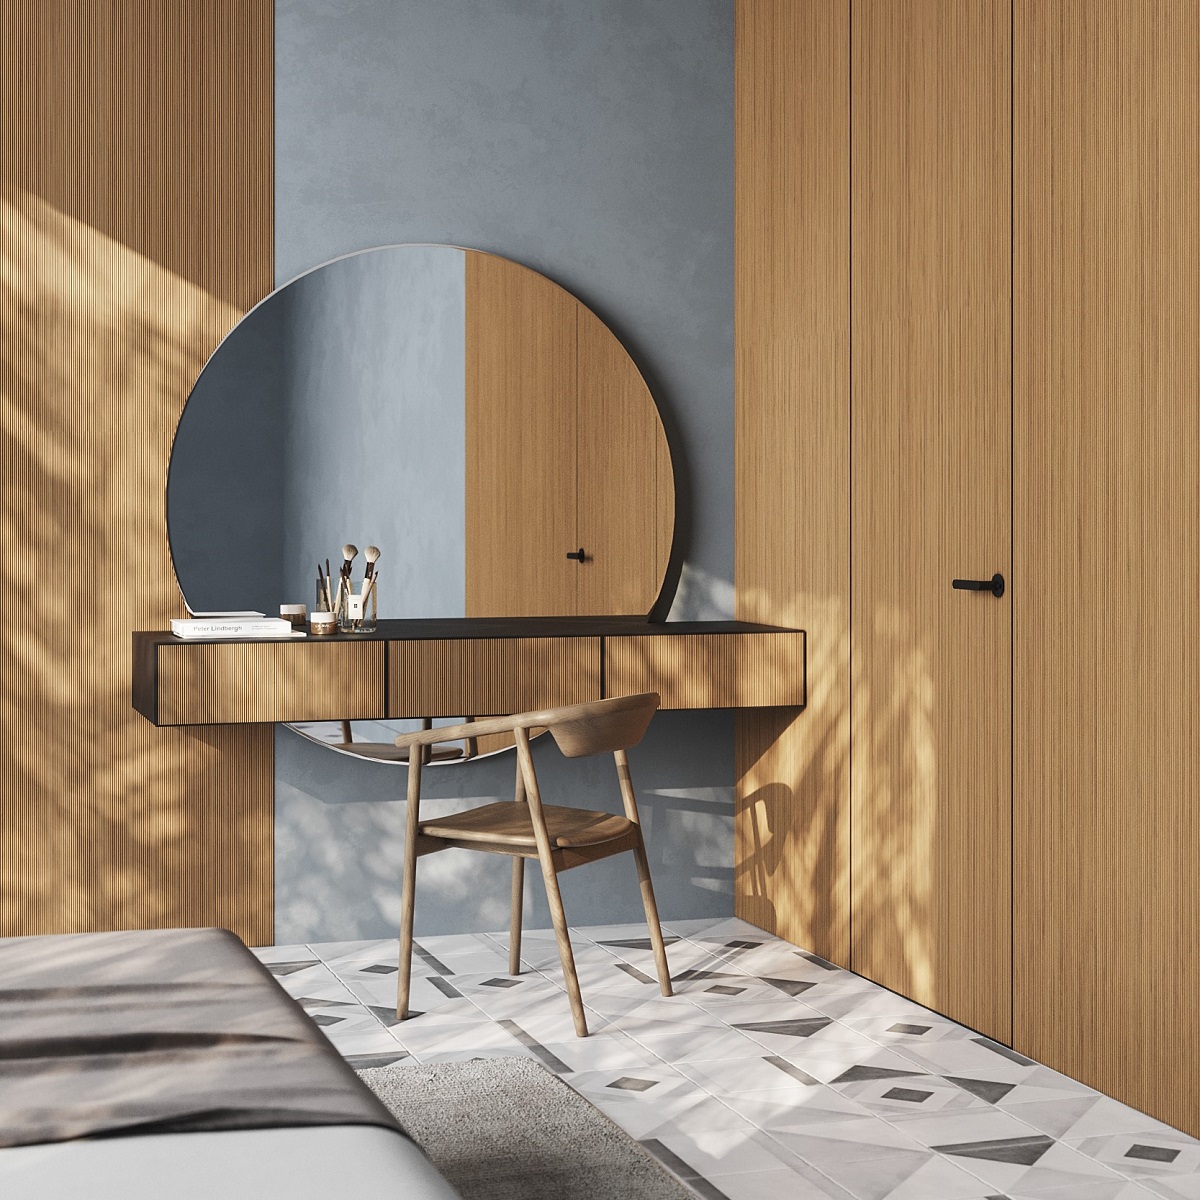 light wood veneer surfaces on wardrobe and vanity in bedroom with patterned tile floor